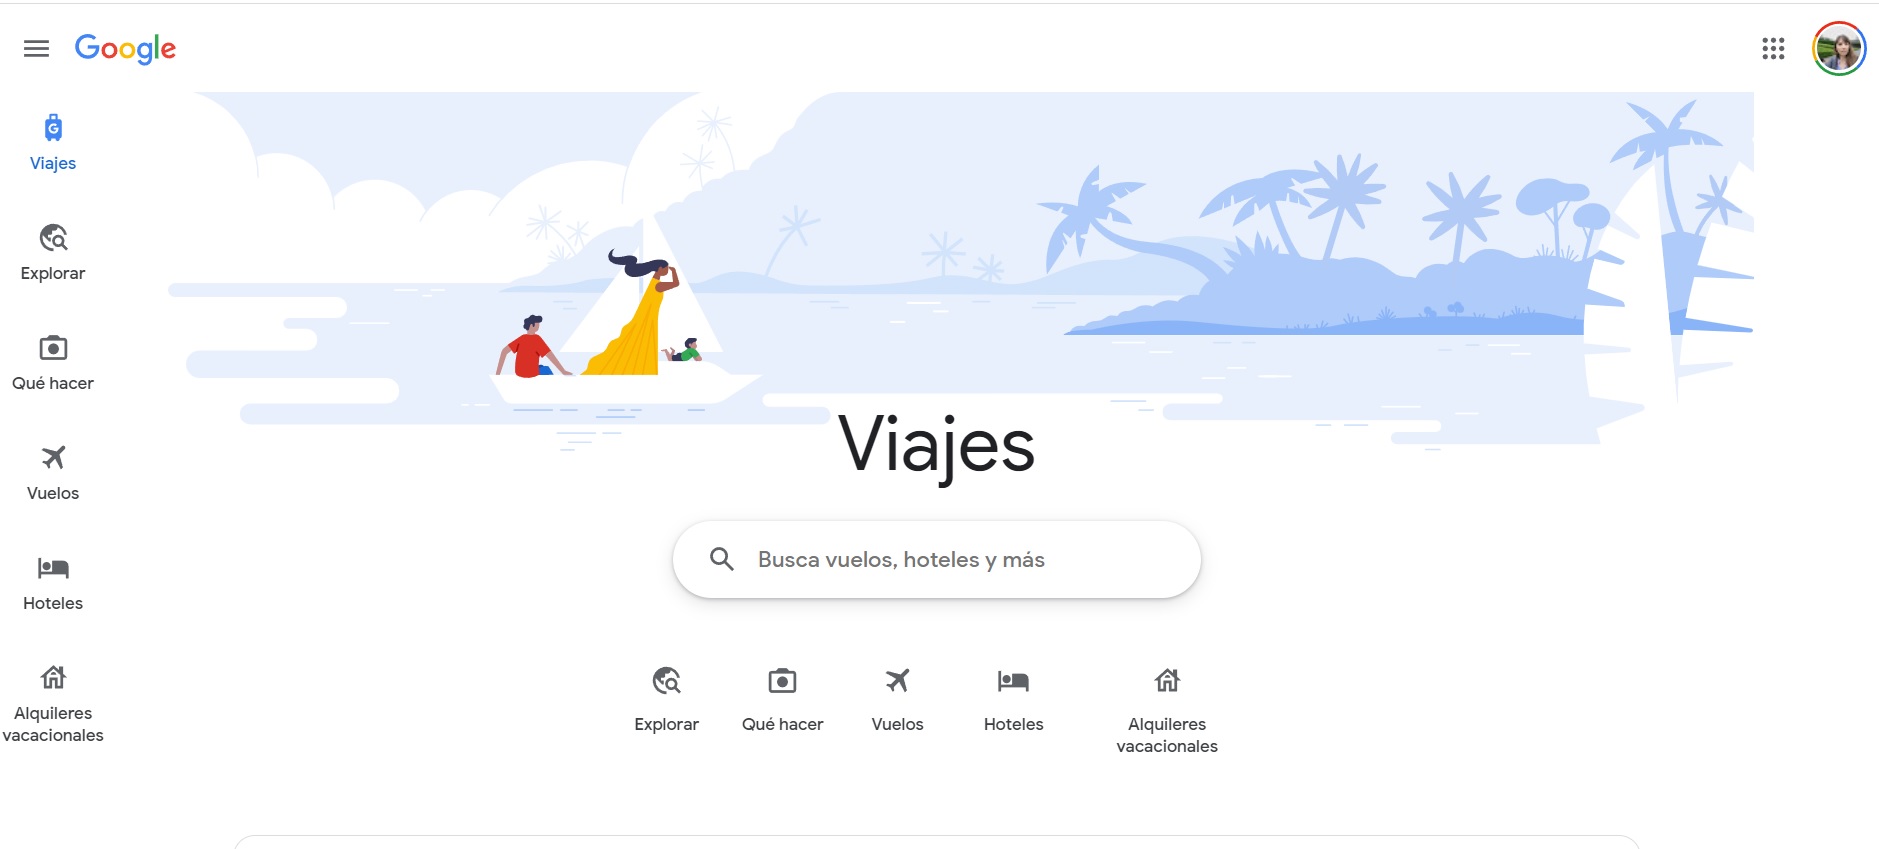 Google viajes tiene un espacio dedicado para Vuelos, así como otras herramientas